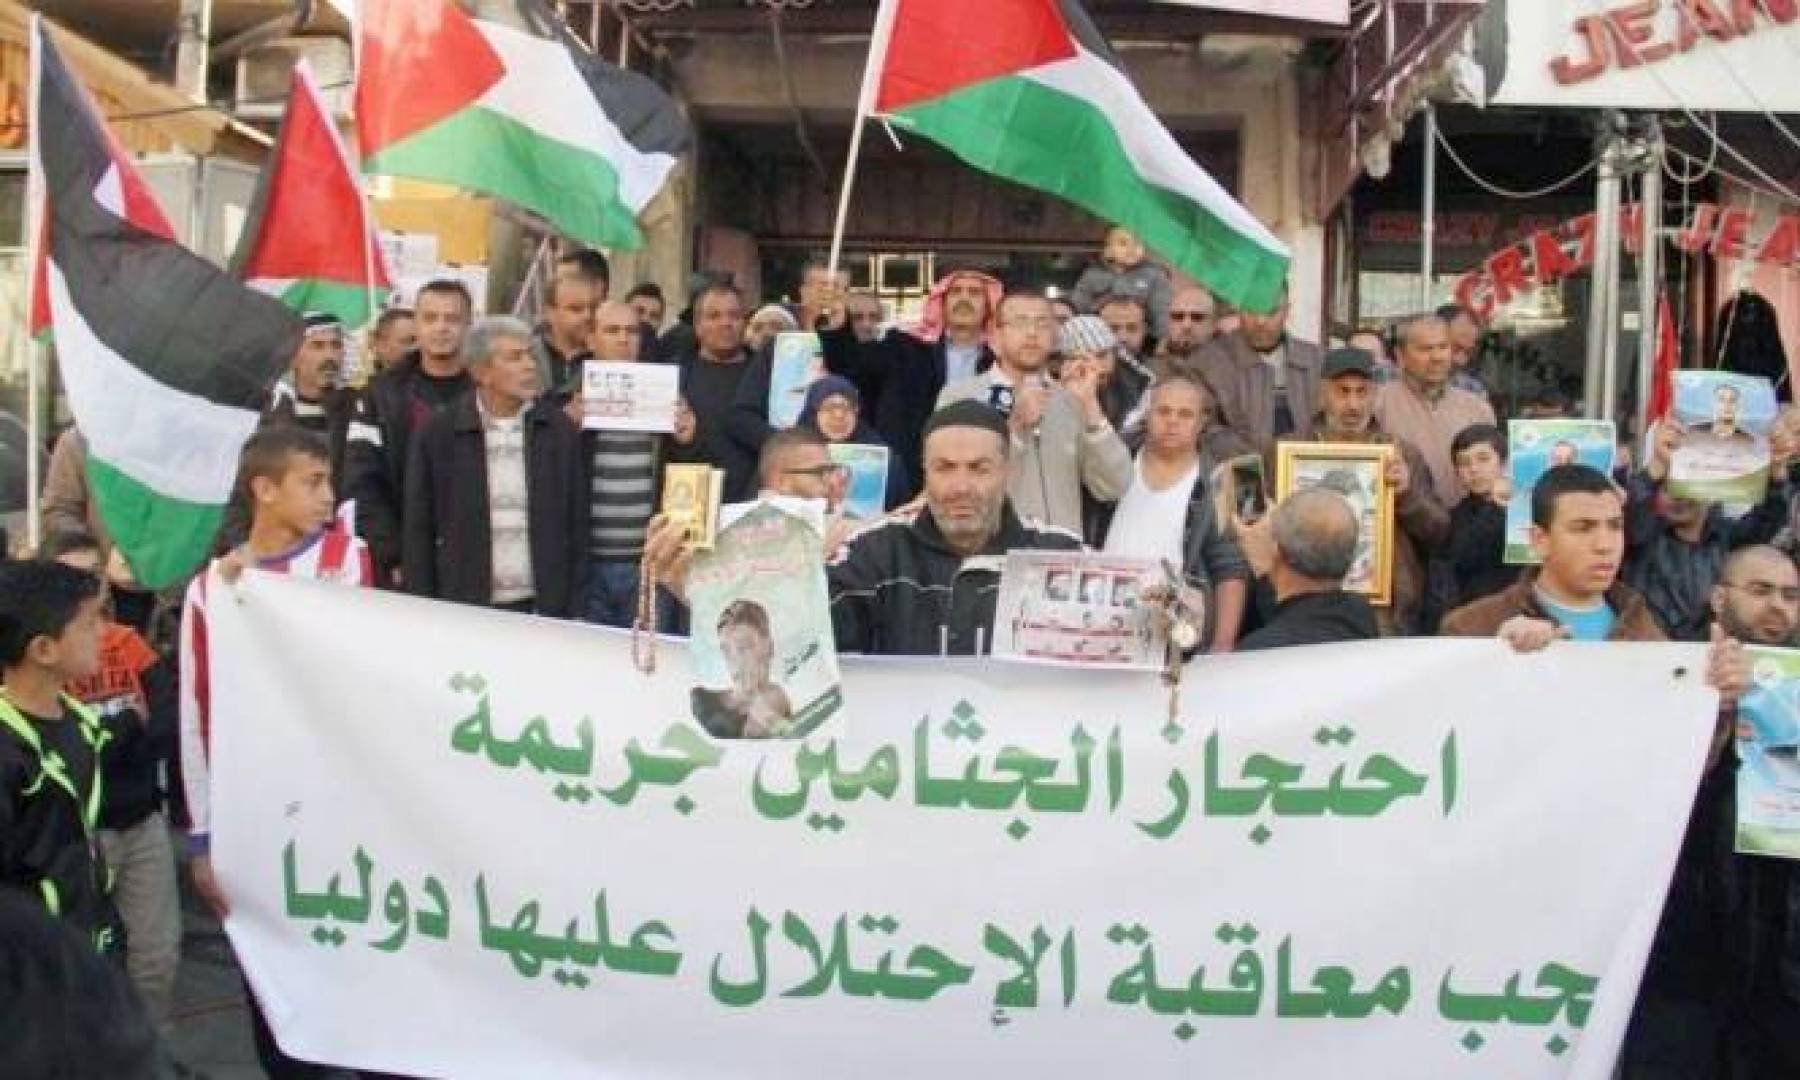 السادية الصهيونية تتلذ بمعاقبة أهالي الشهداء,, إحتجاز جثامين شهداء فلسطين جريمة يعاقب عليها القانون الدولي.